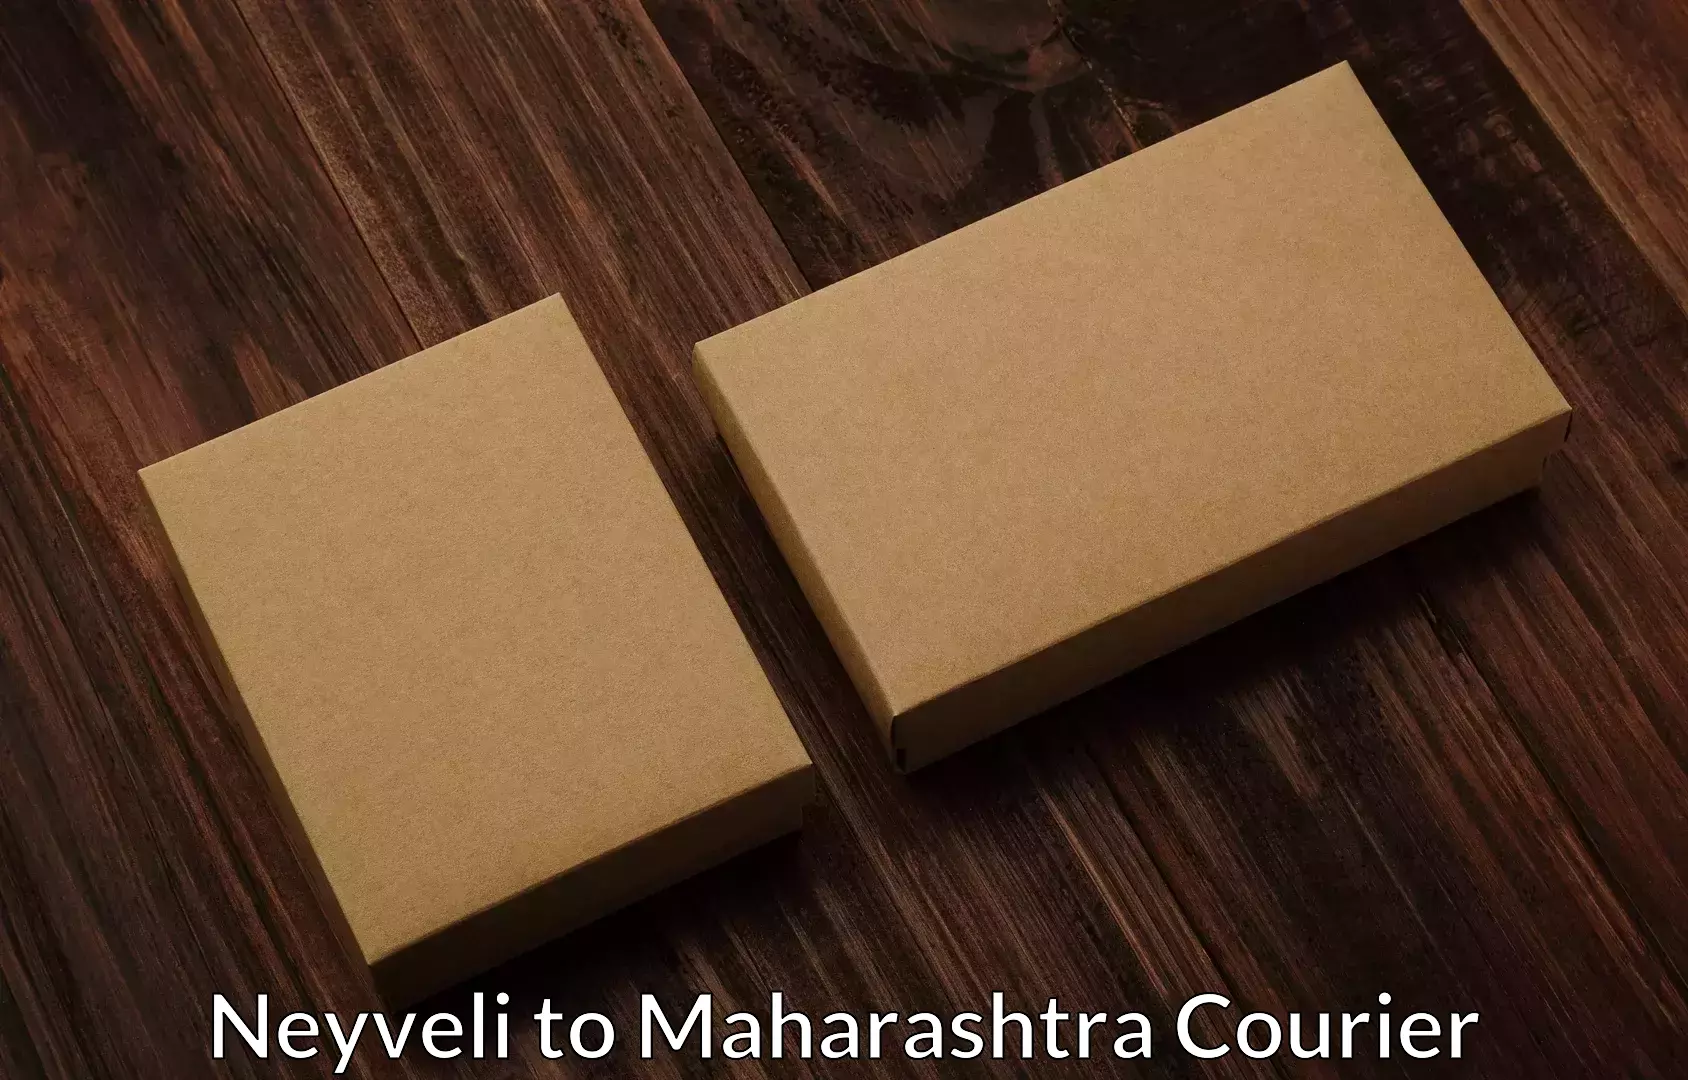 Quality relocation services Neyveli to Maharashtra